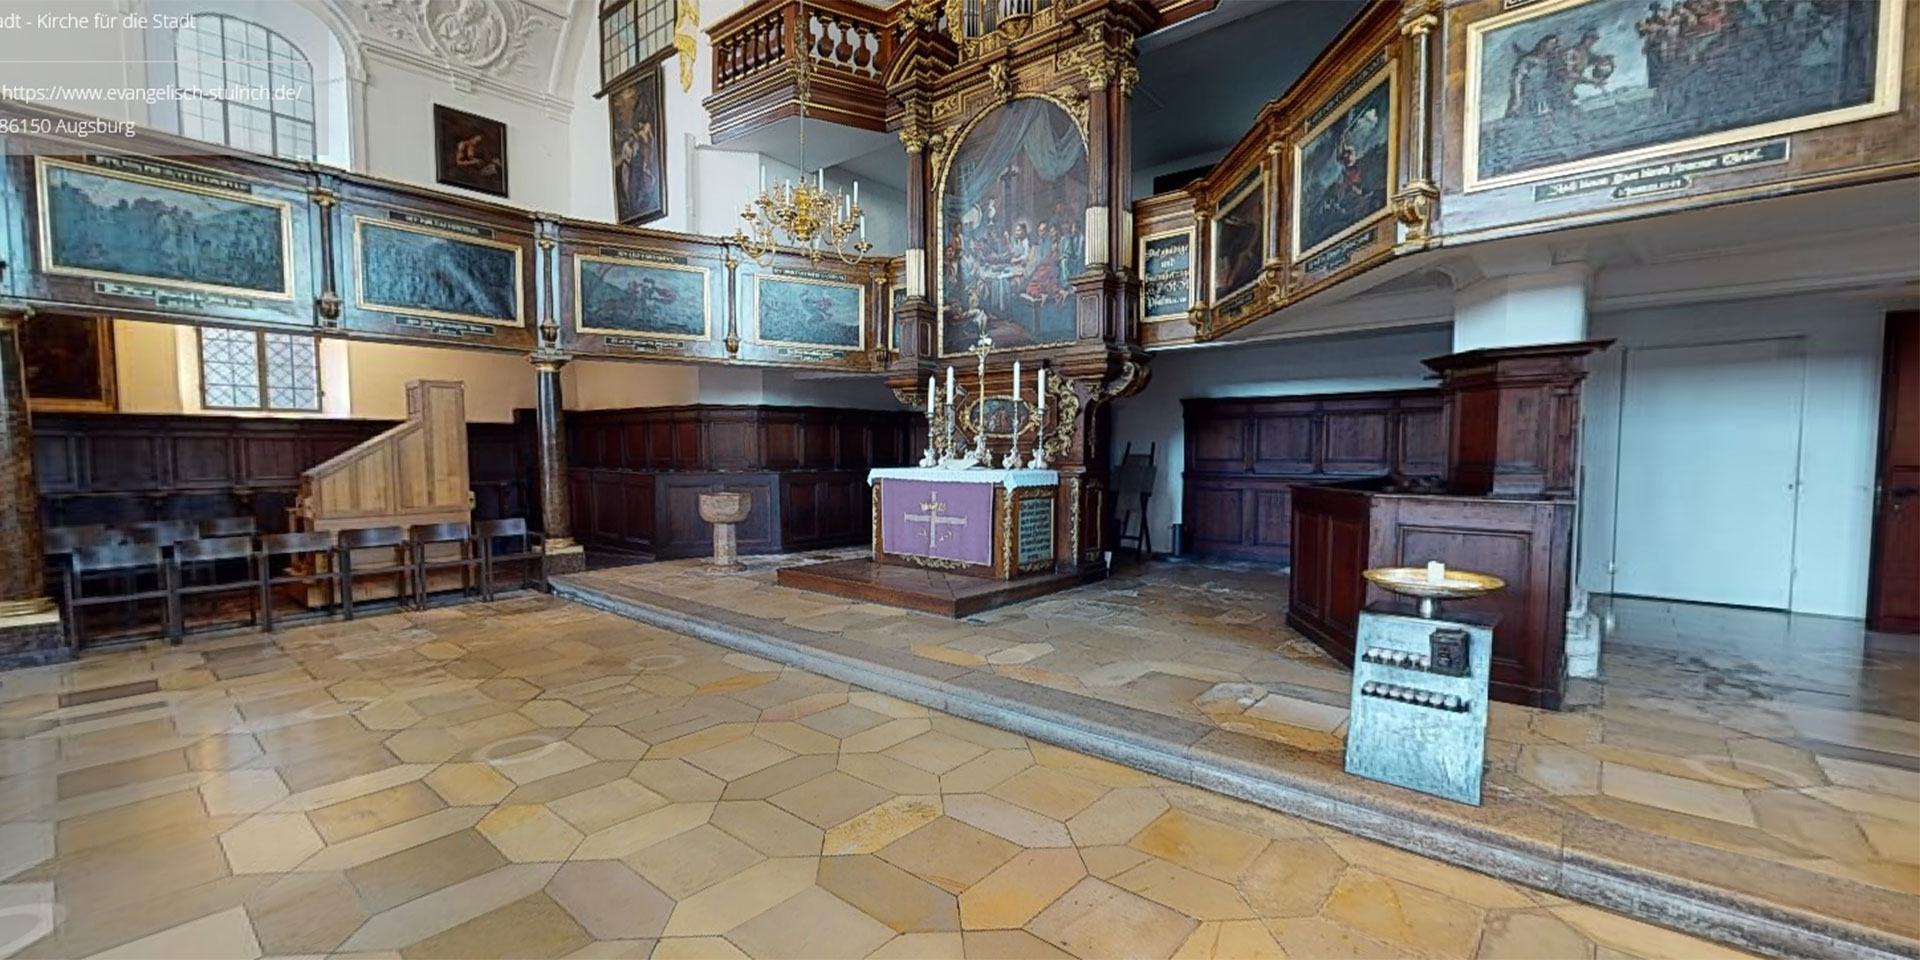 Von innen zeigt sich die Ulrichskirche in ihrer barocken Pracht, die aus dem späten 17. und frühen 18. Jahrhundert kommt.